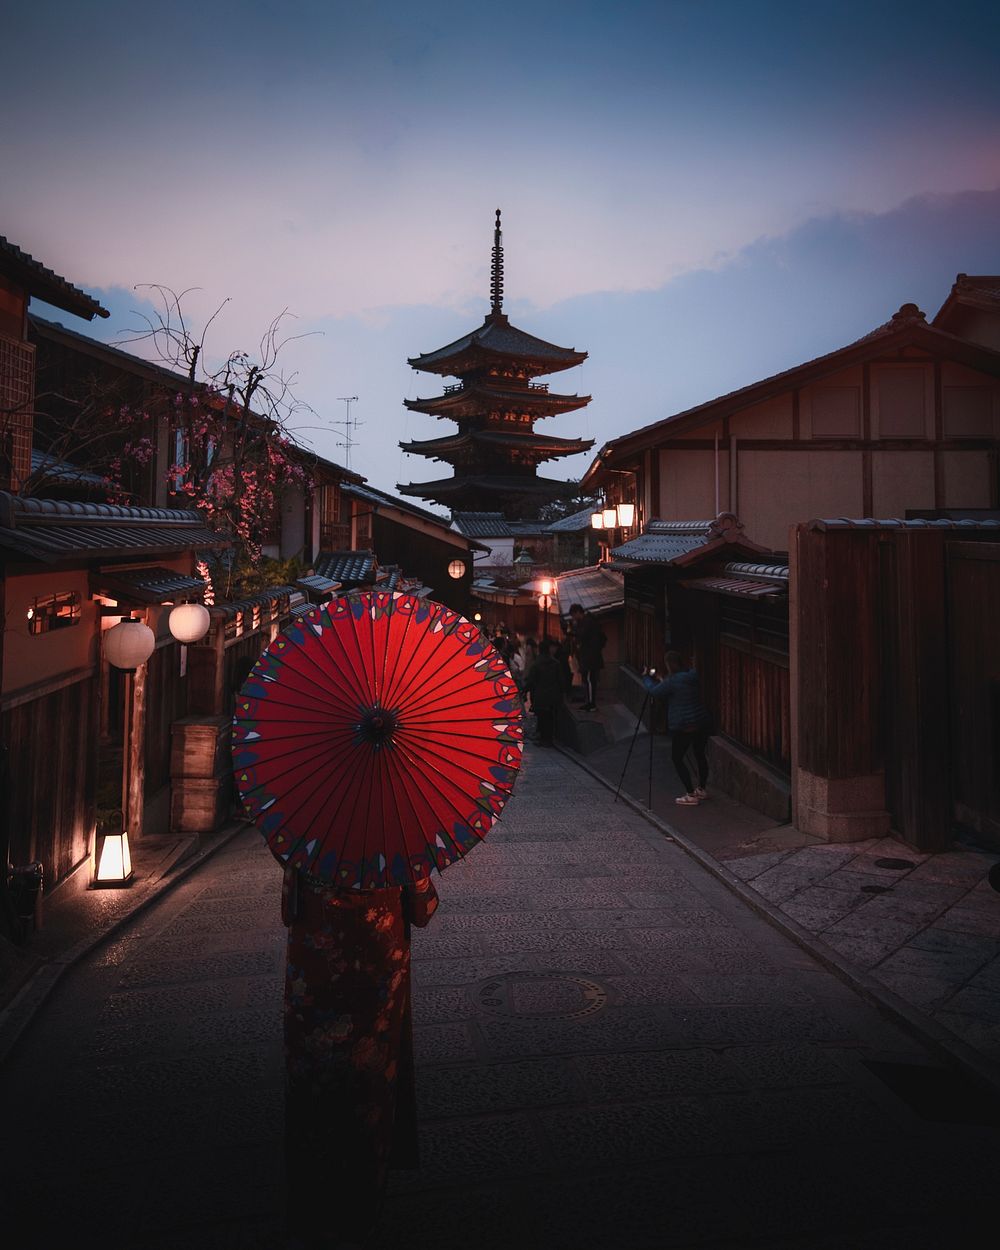 Woman in a kimono walking with a red umbrella at Yasaka Pagoda in Kyoto, Japan